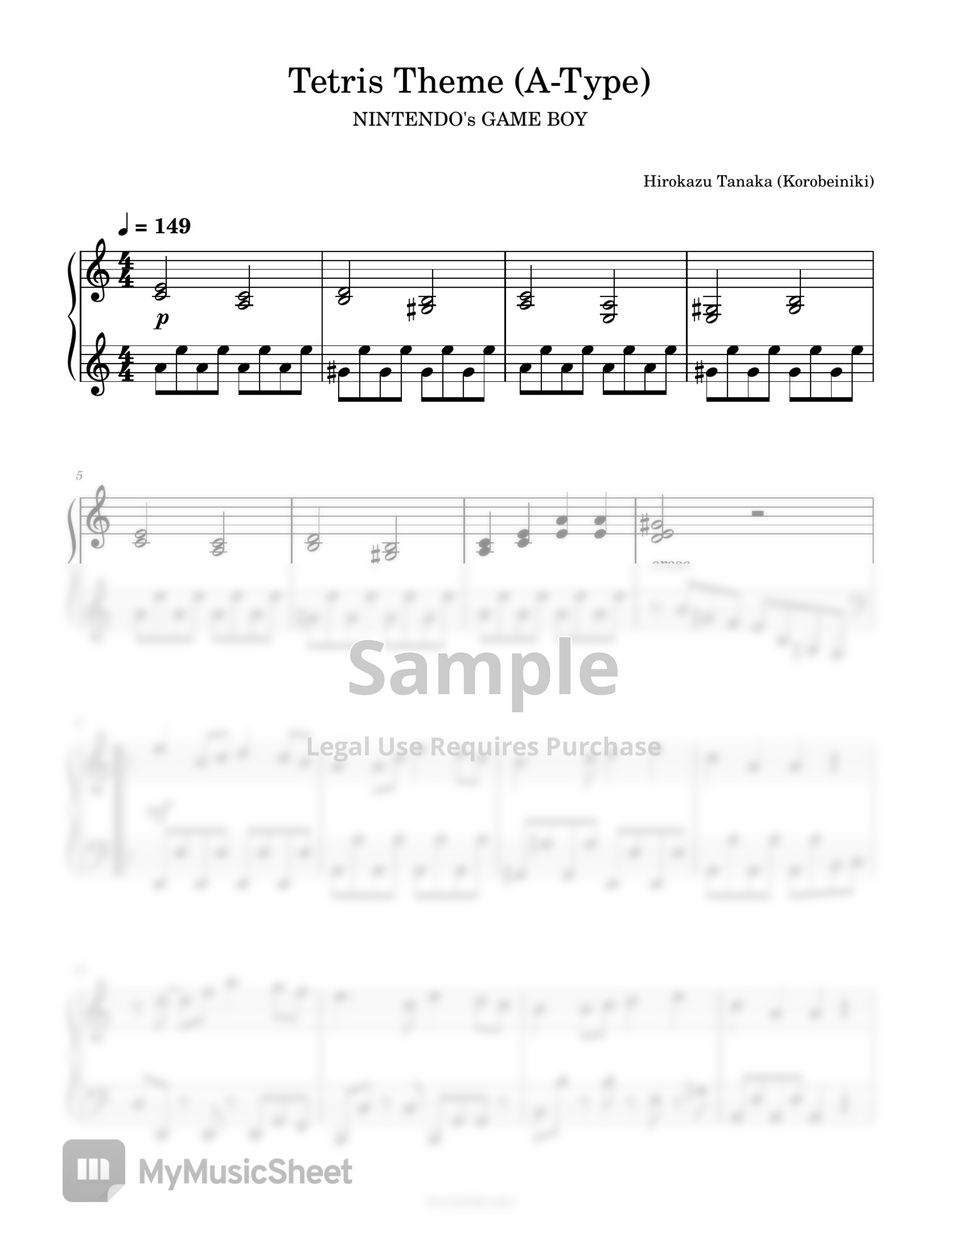 Hirokazu Tanaka · Korobeiniki - Tetris Theme by PianoFreaks